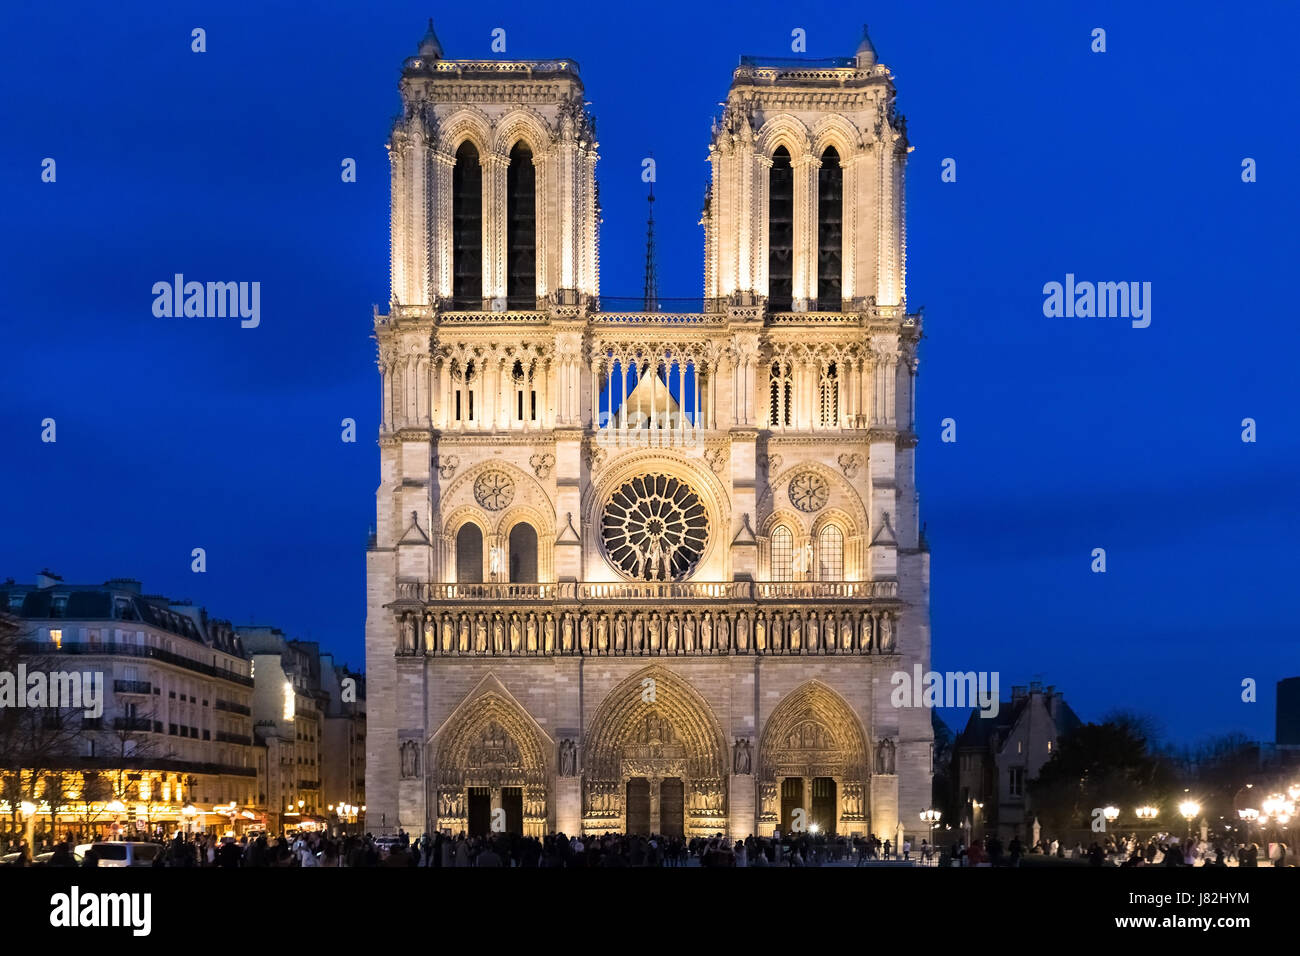 Façade principale de la cathédrale Notre-Dame de Paris au crépuscule avec illuminations et ciel bleu, célèbre monument de France, correction de la perspective Banque D'Images